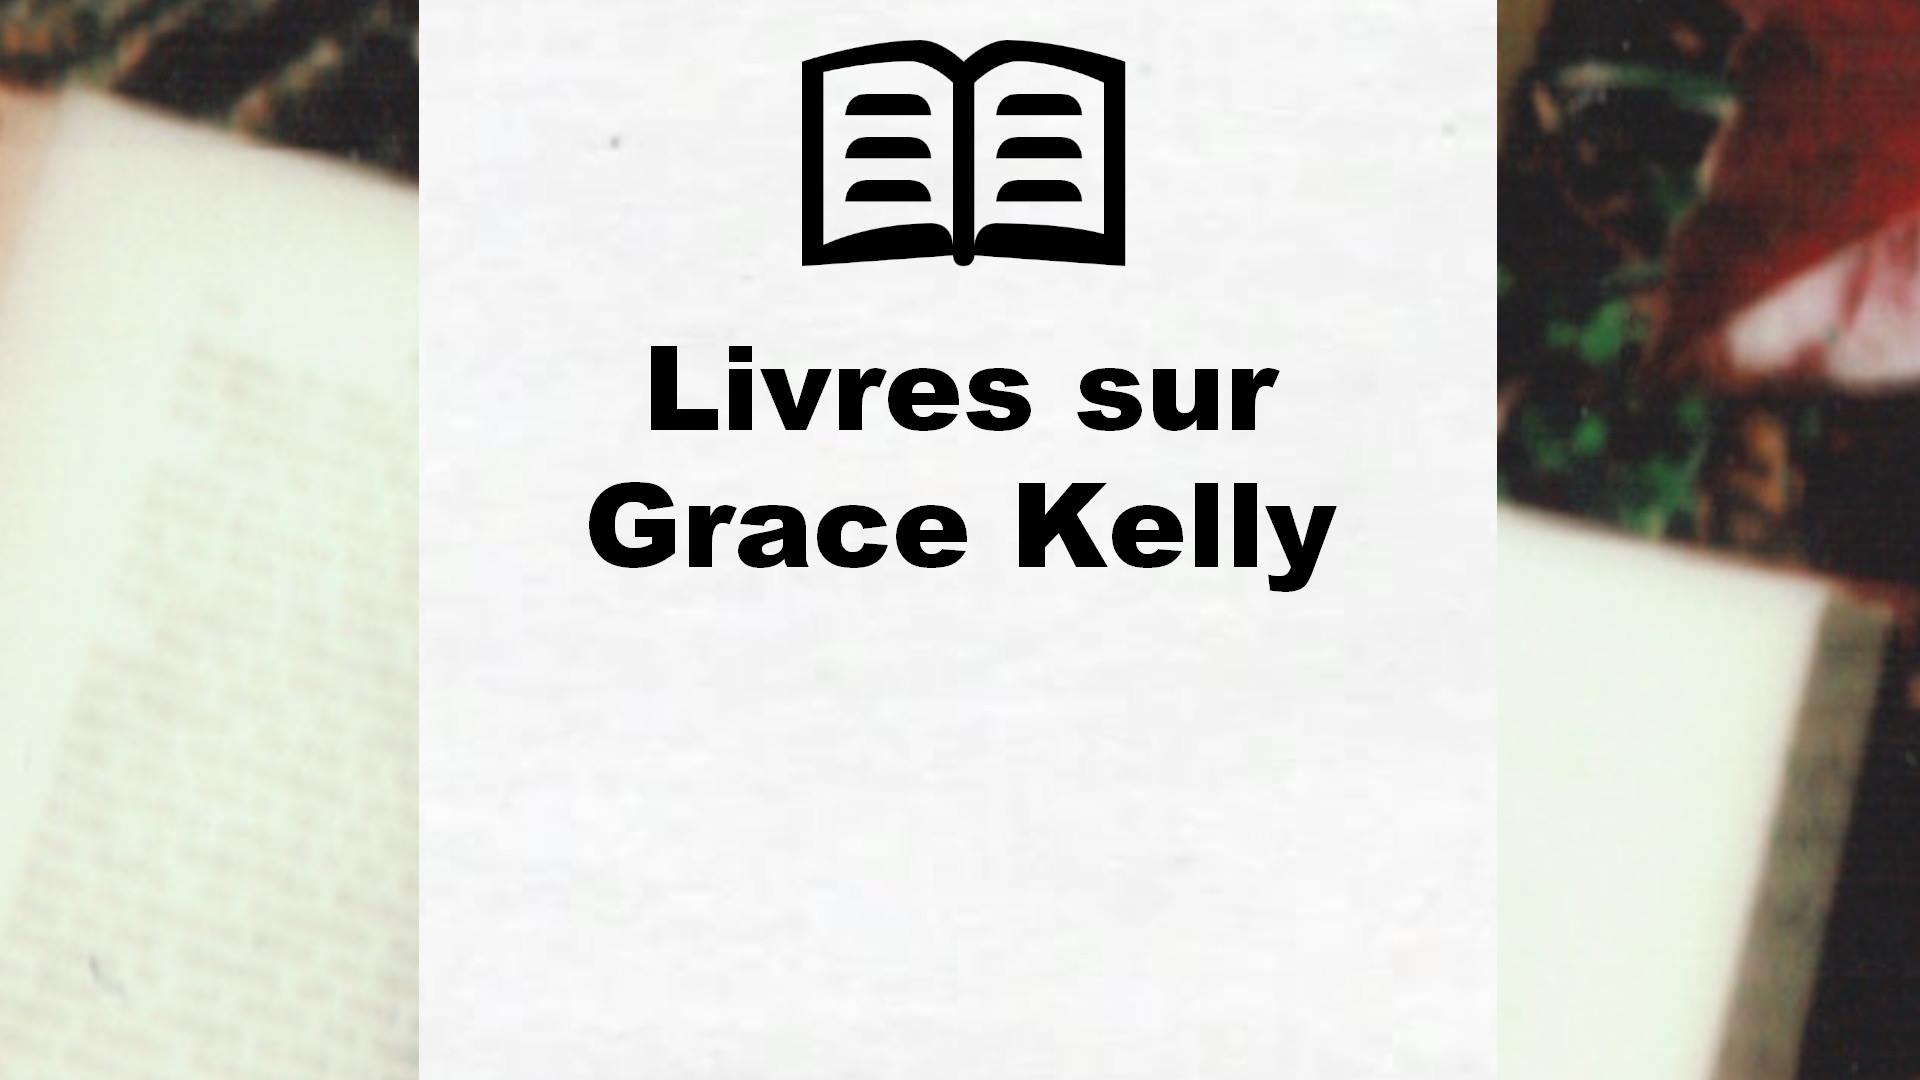 Livres sur Grace Kelly